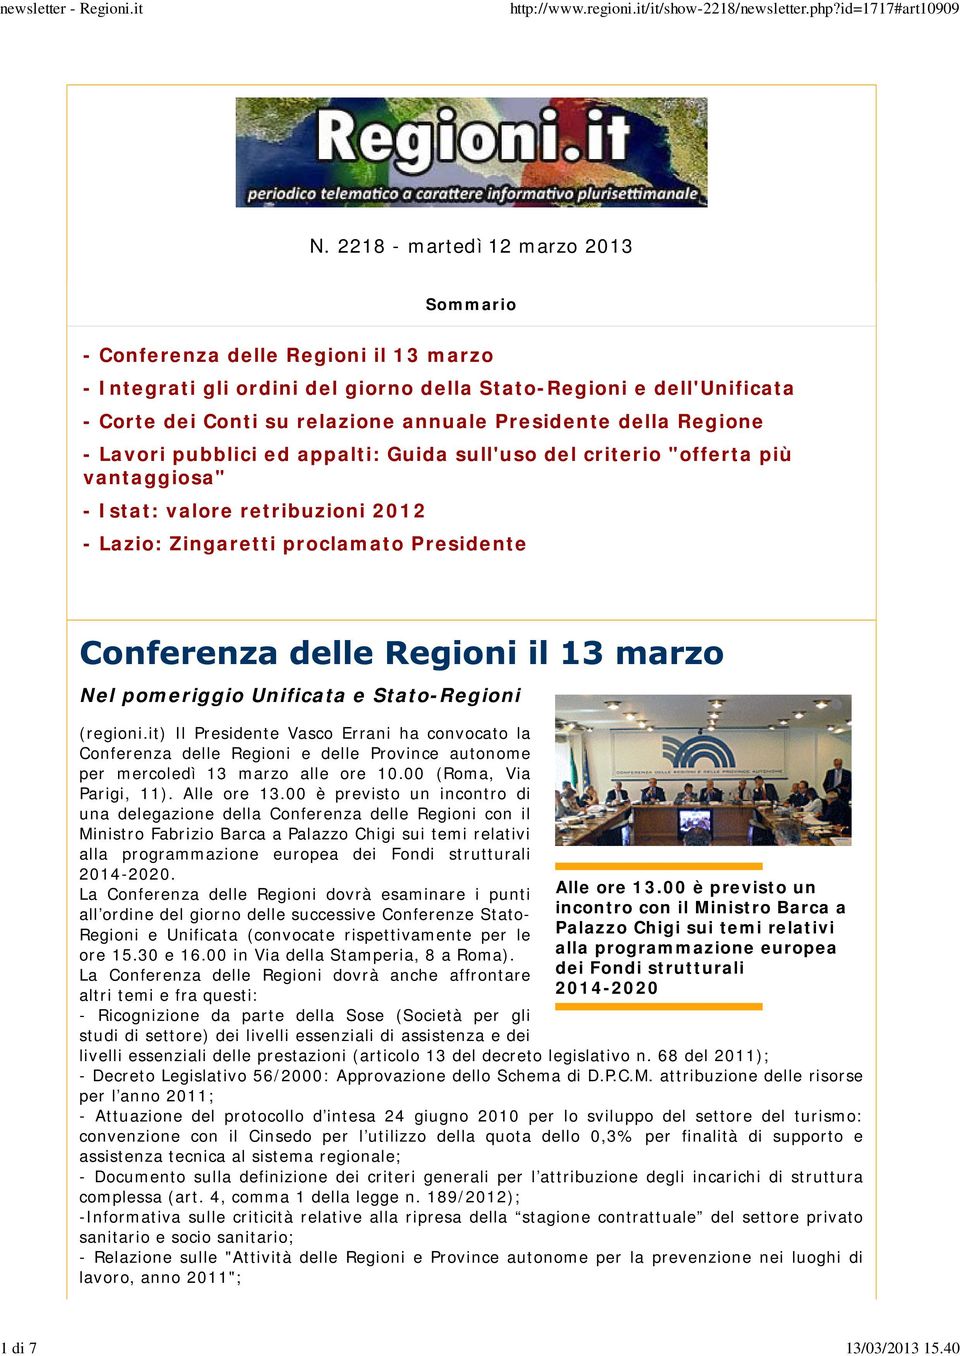 Unificata e Stato-Regioni (regioni.it) Il Presidente Vasco Errani ha convocato la Conferenza delle Regioni e delle Province autonome per mercoledì 13 marzo alle ore 10.00 (Roma, Via Parigi, 11).